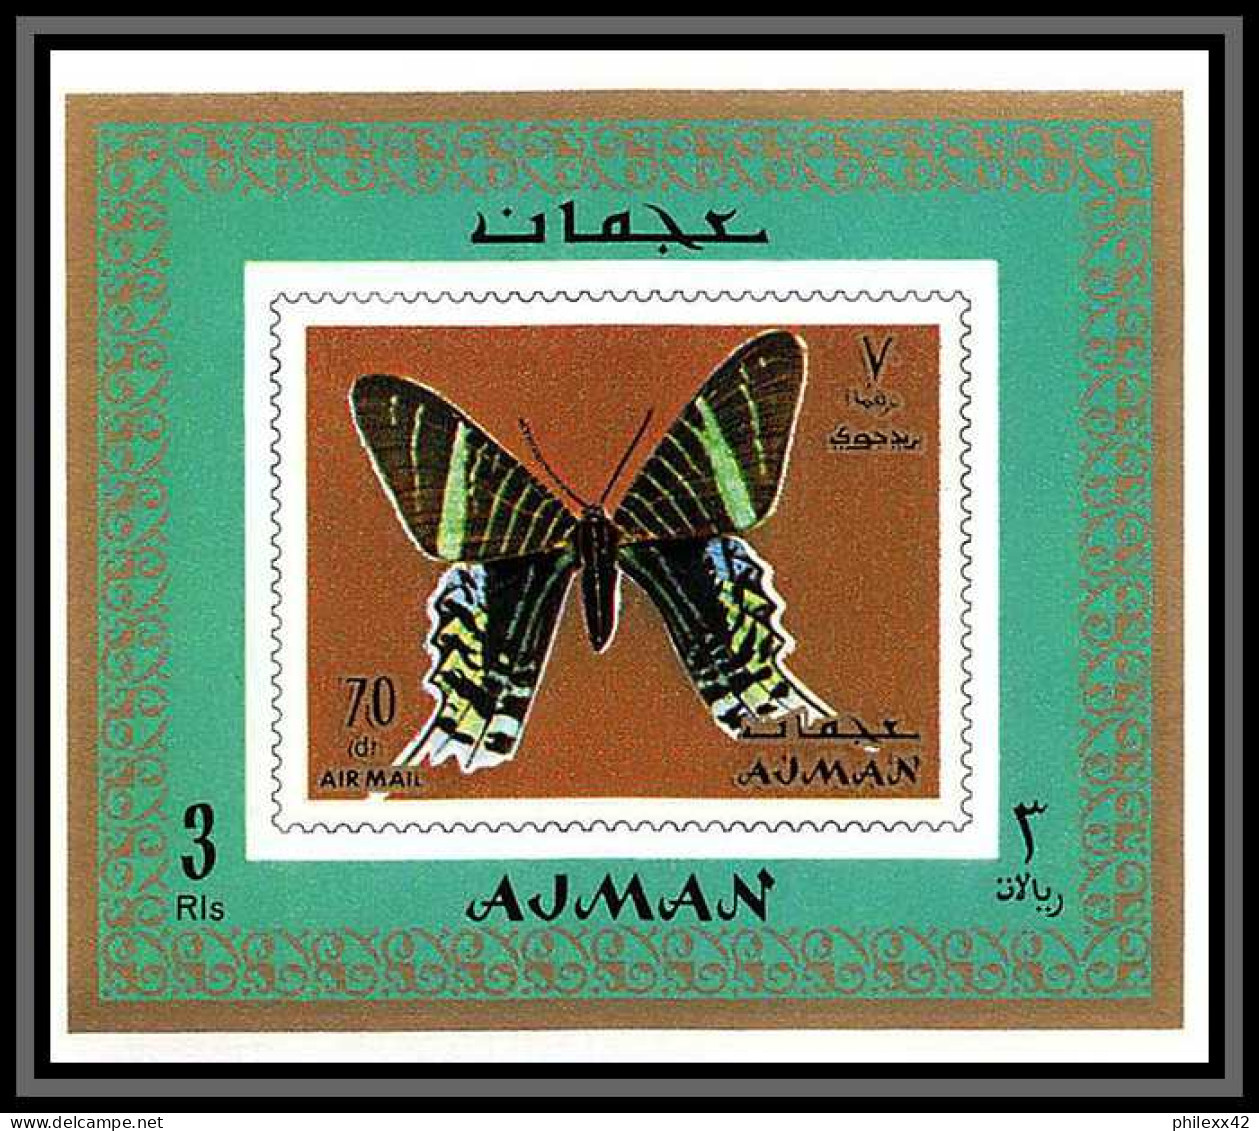 Ajman - 2736/ N°747 / 754 papillons (butterflies) deluxe miniature sheets 1971